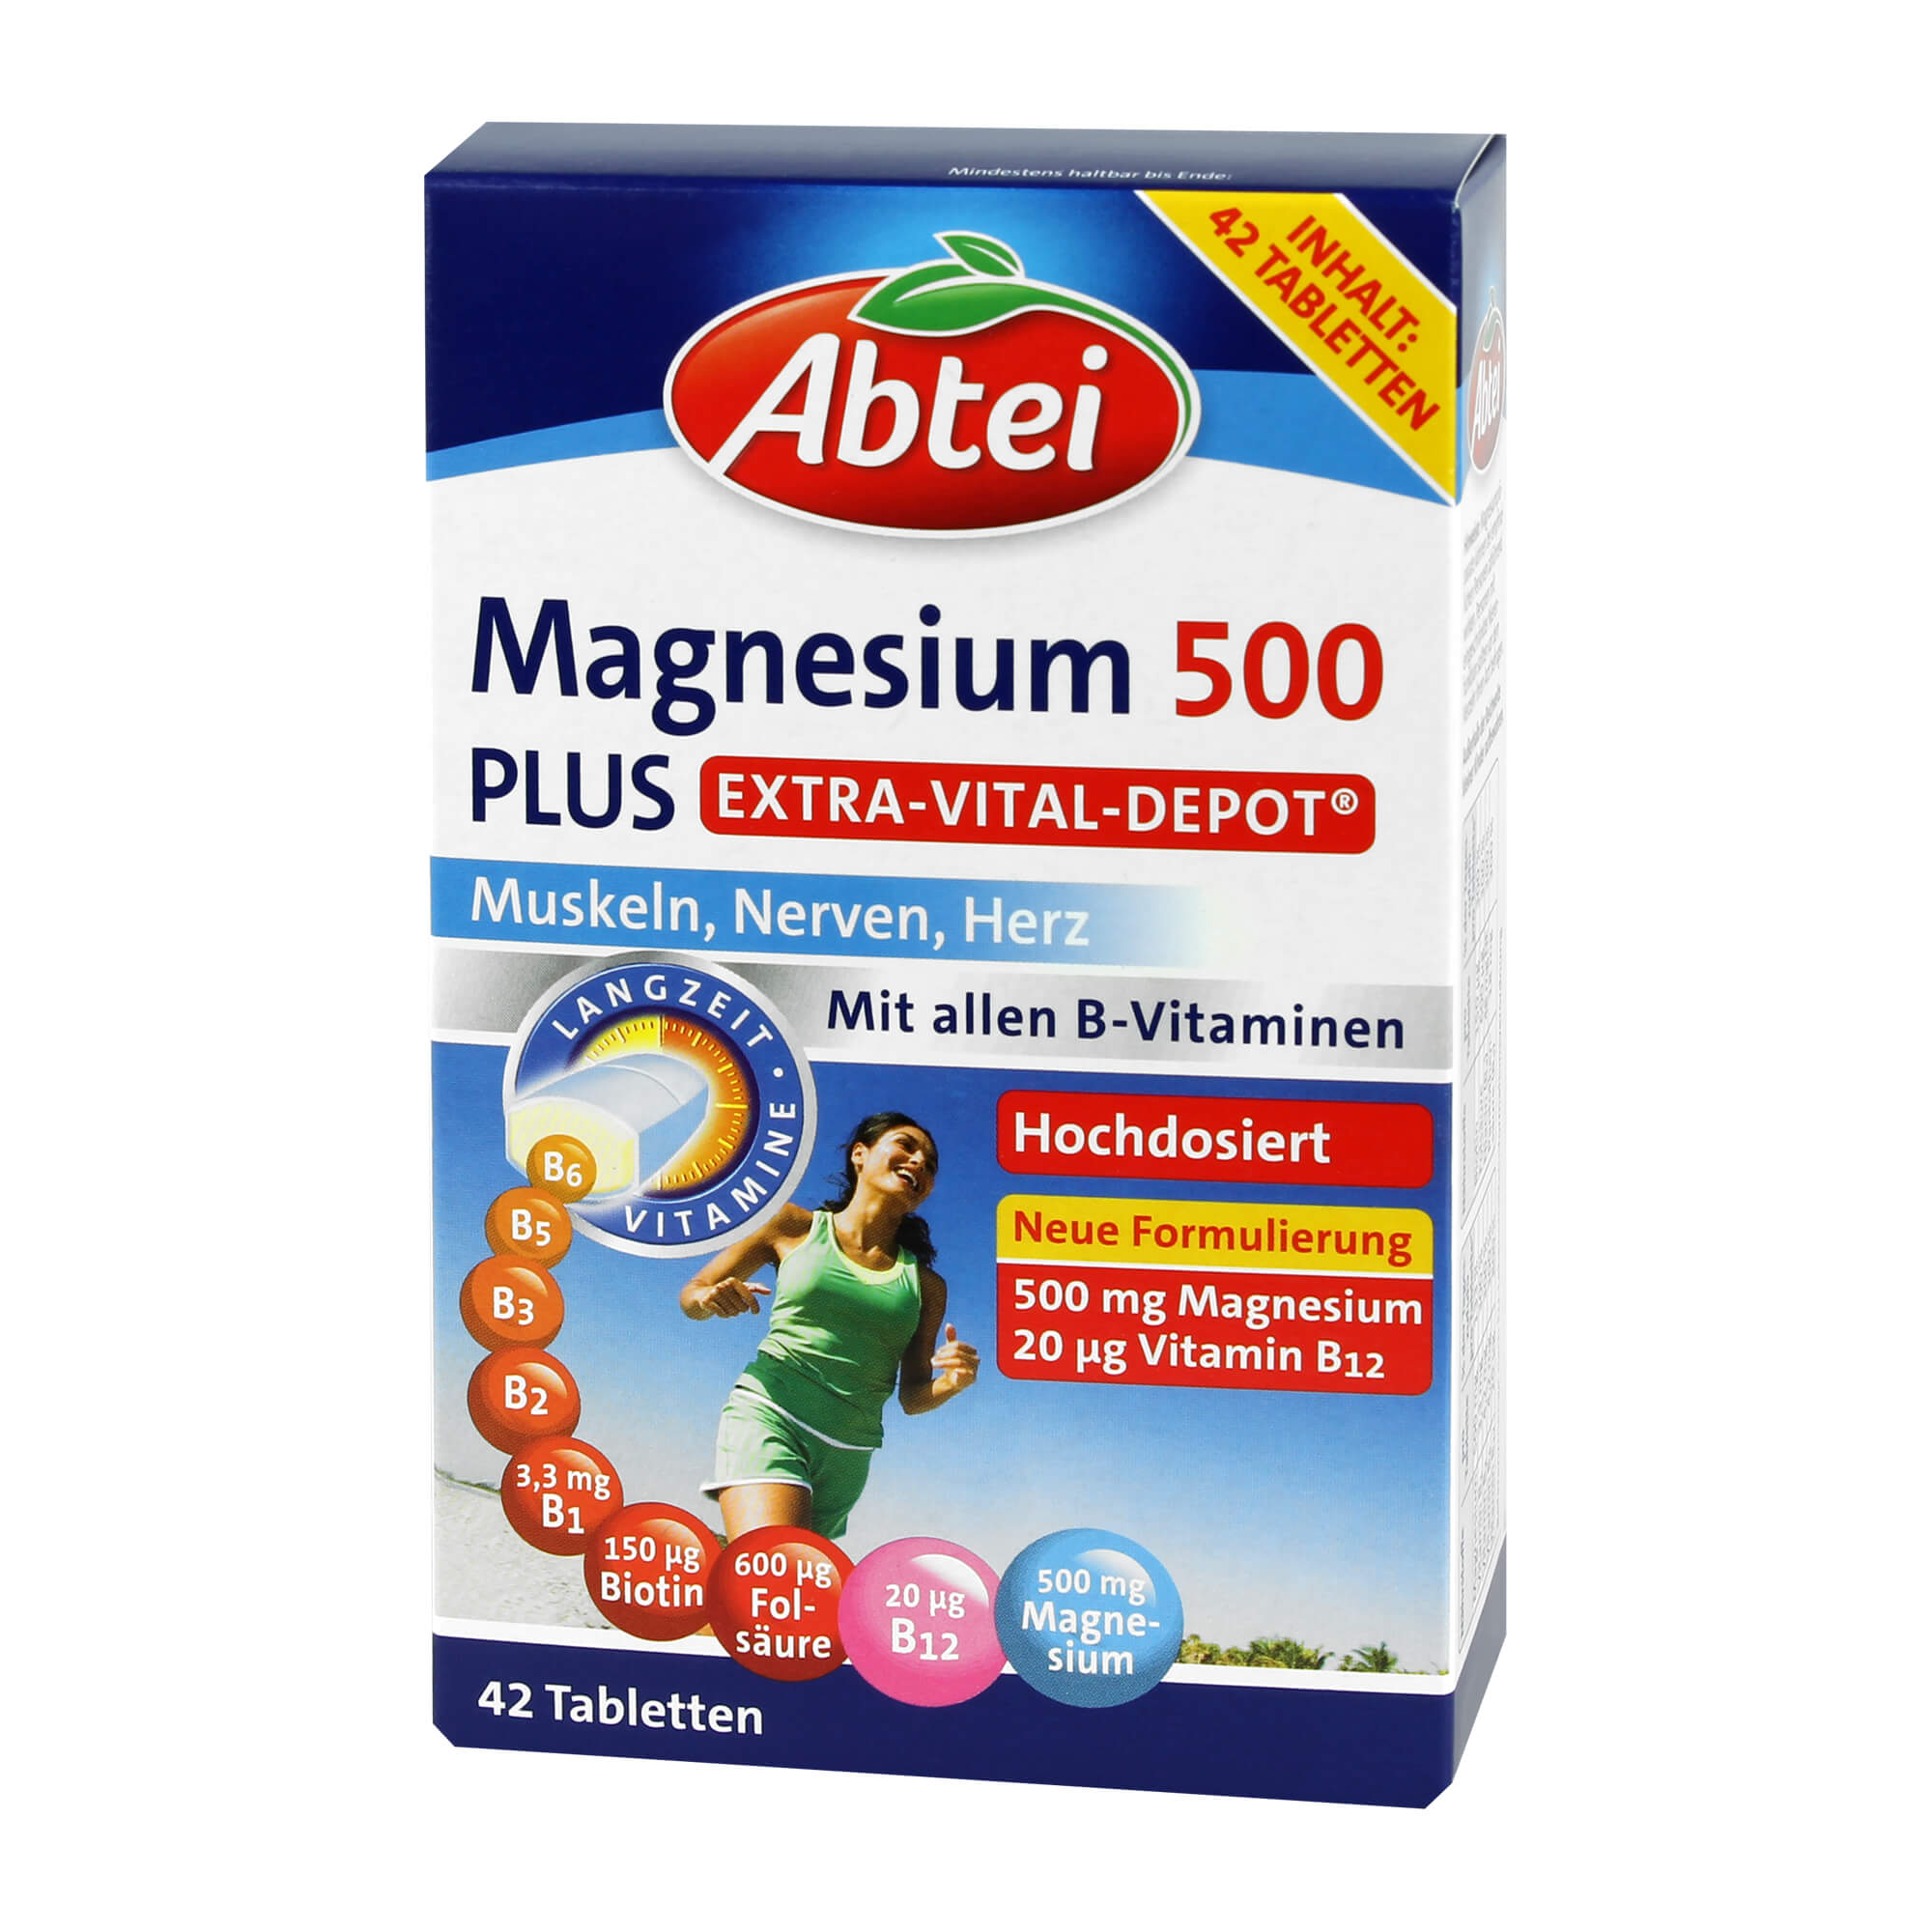 Nahrungsergänzungsmittel mit Magnesium und Vitamin B-Komplex.